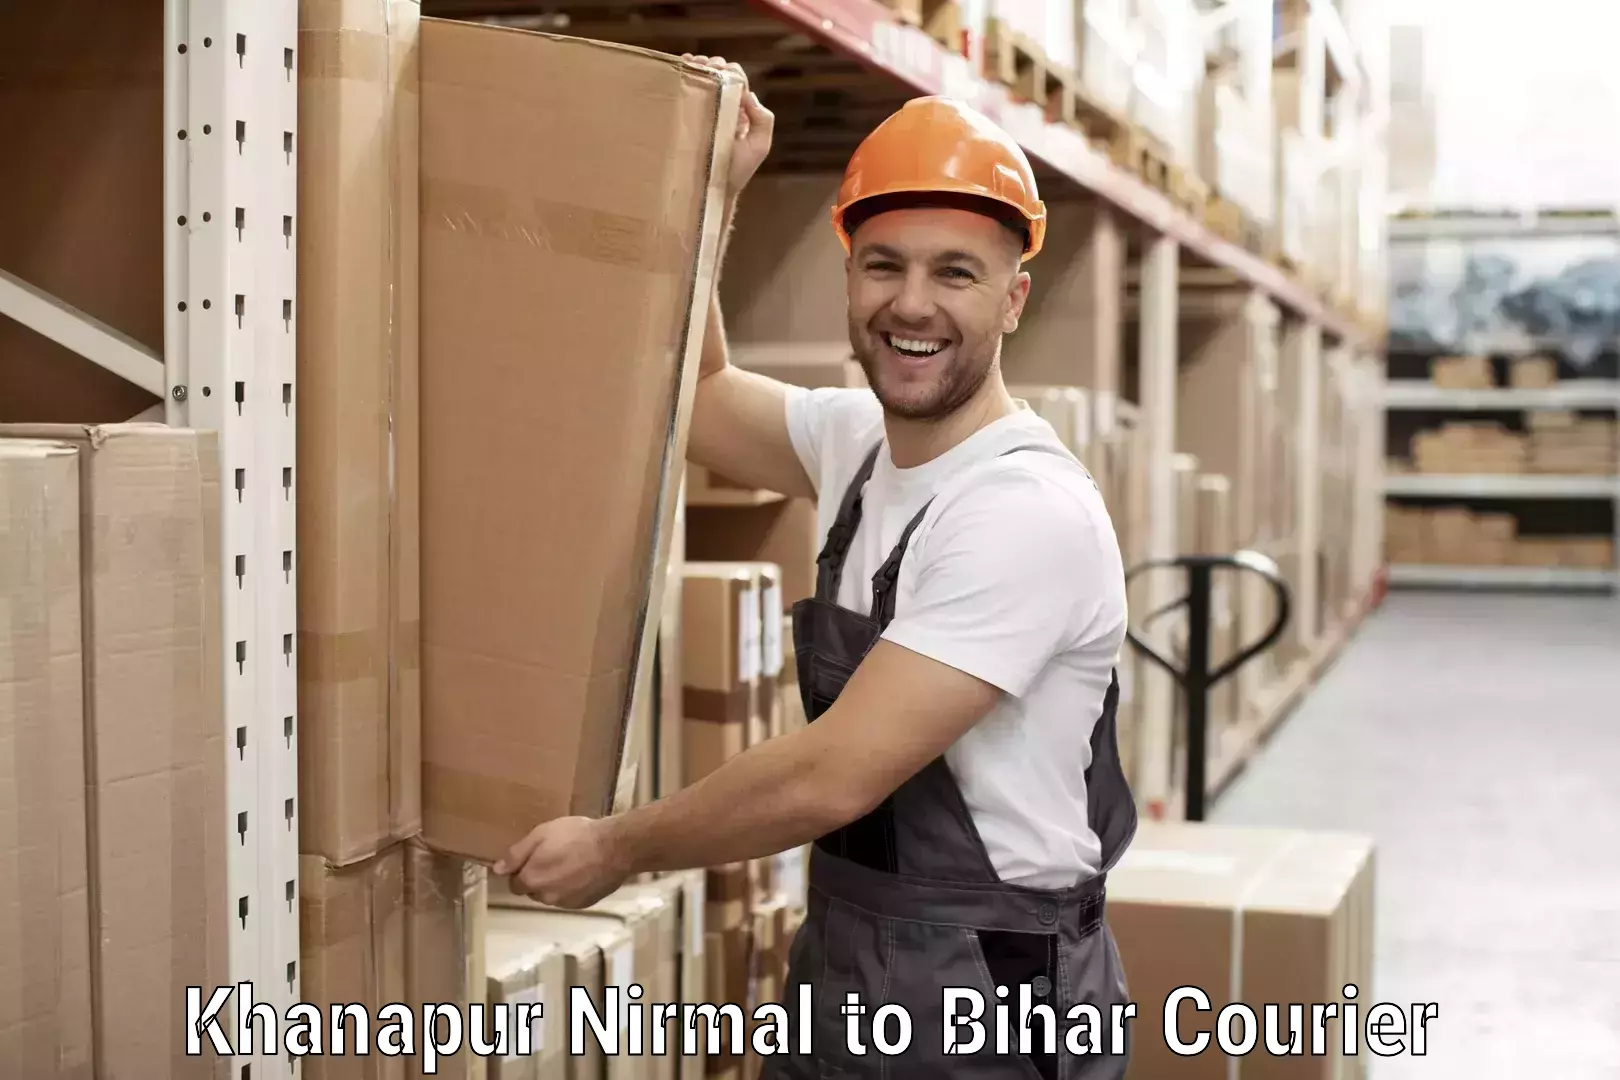 Large package courier Khanapur Nirmal to Muzaffarpur